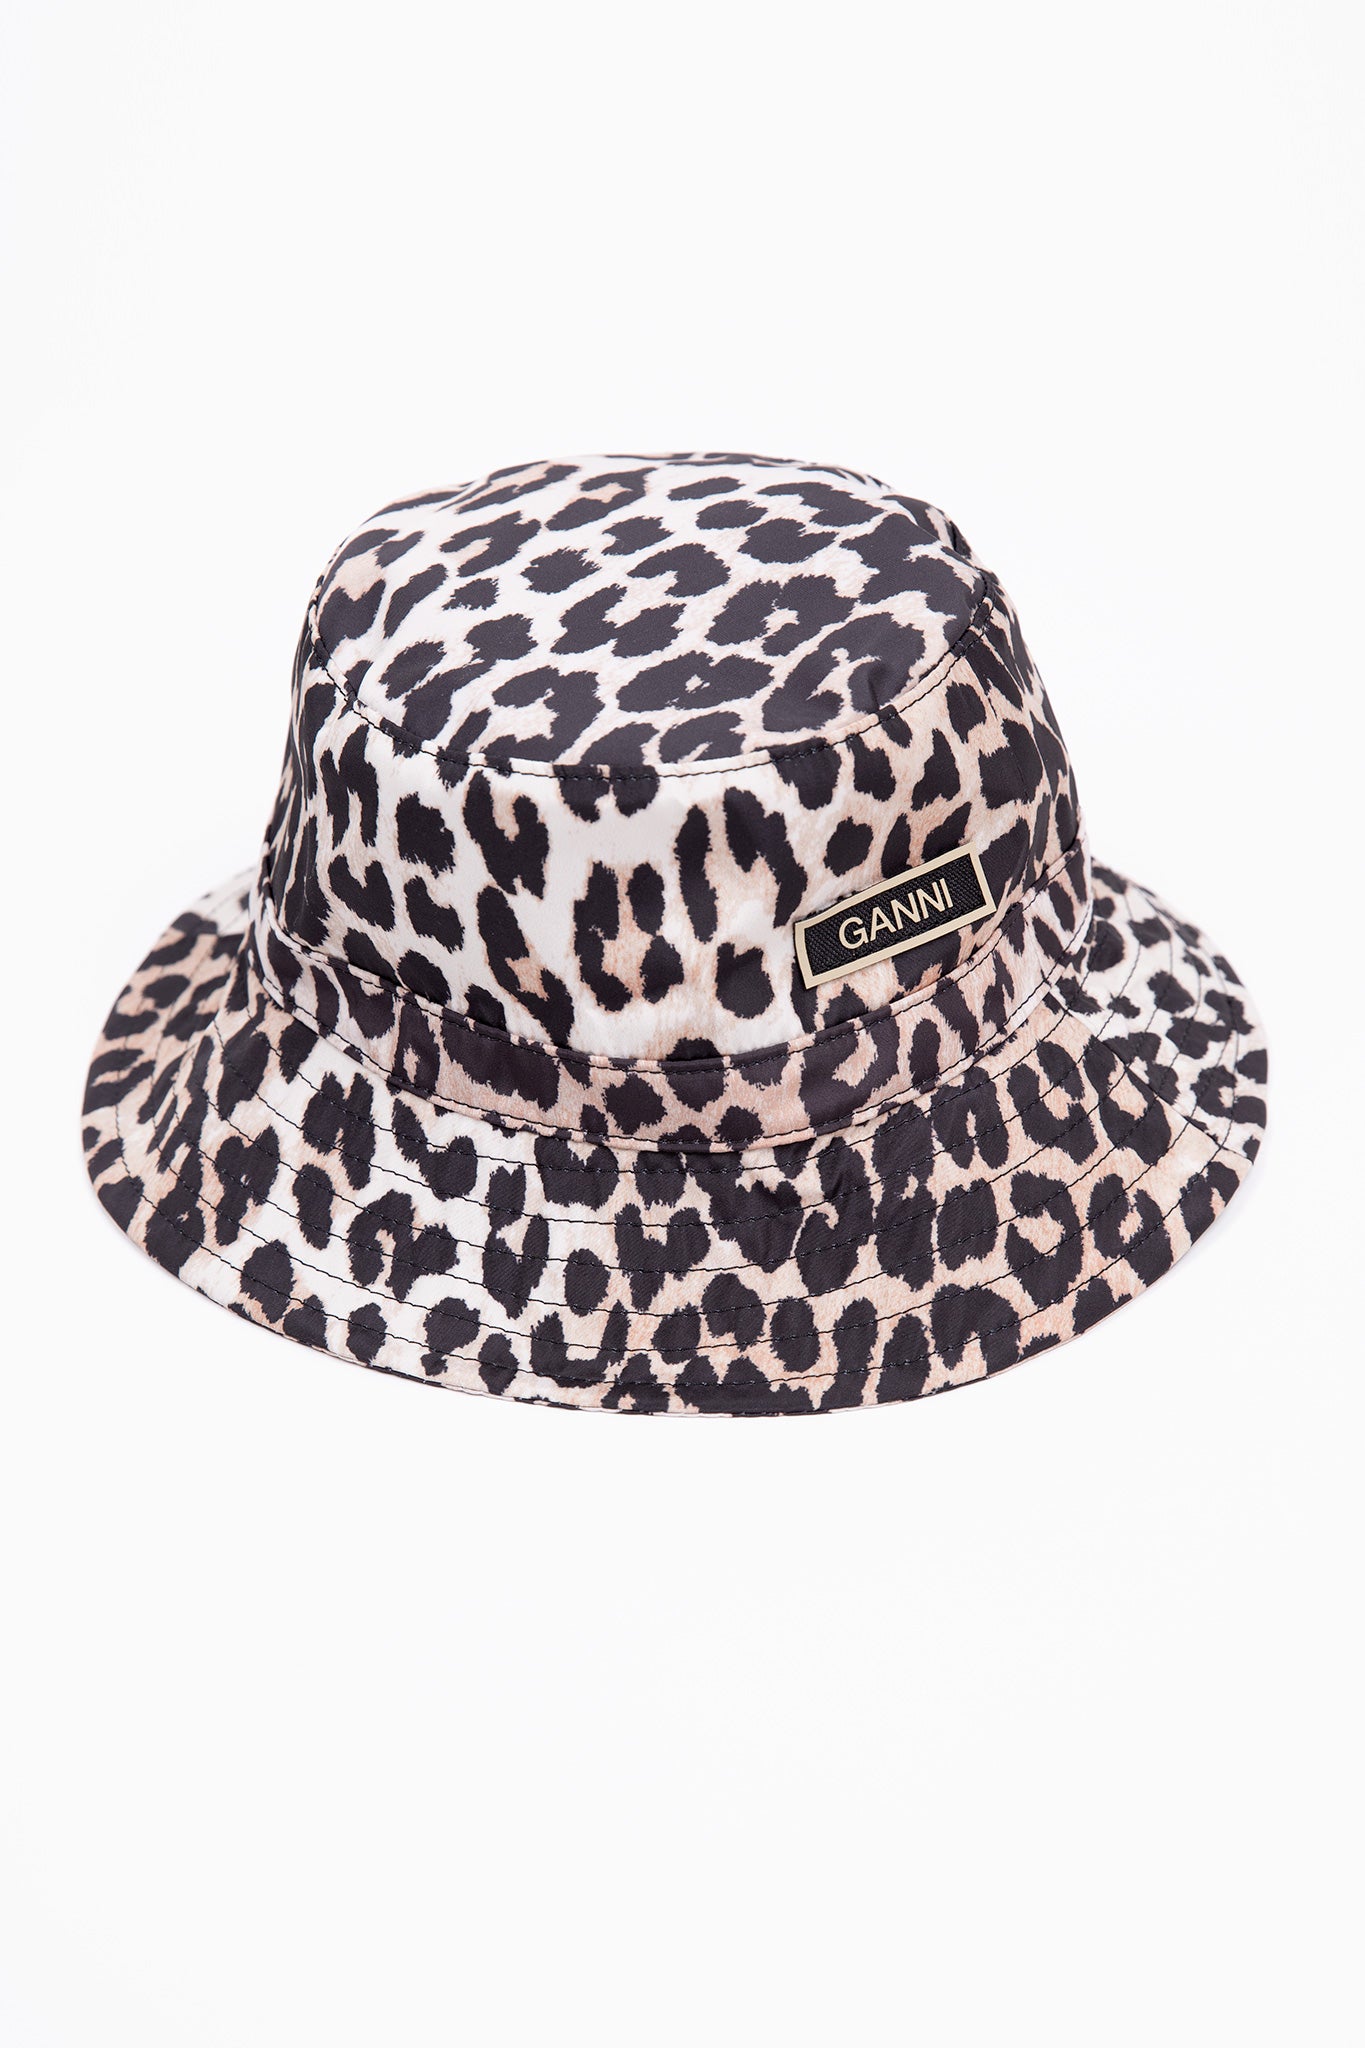 Ganni-Bucket-Hat-Leopard